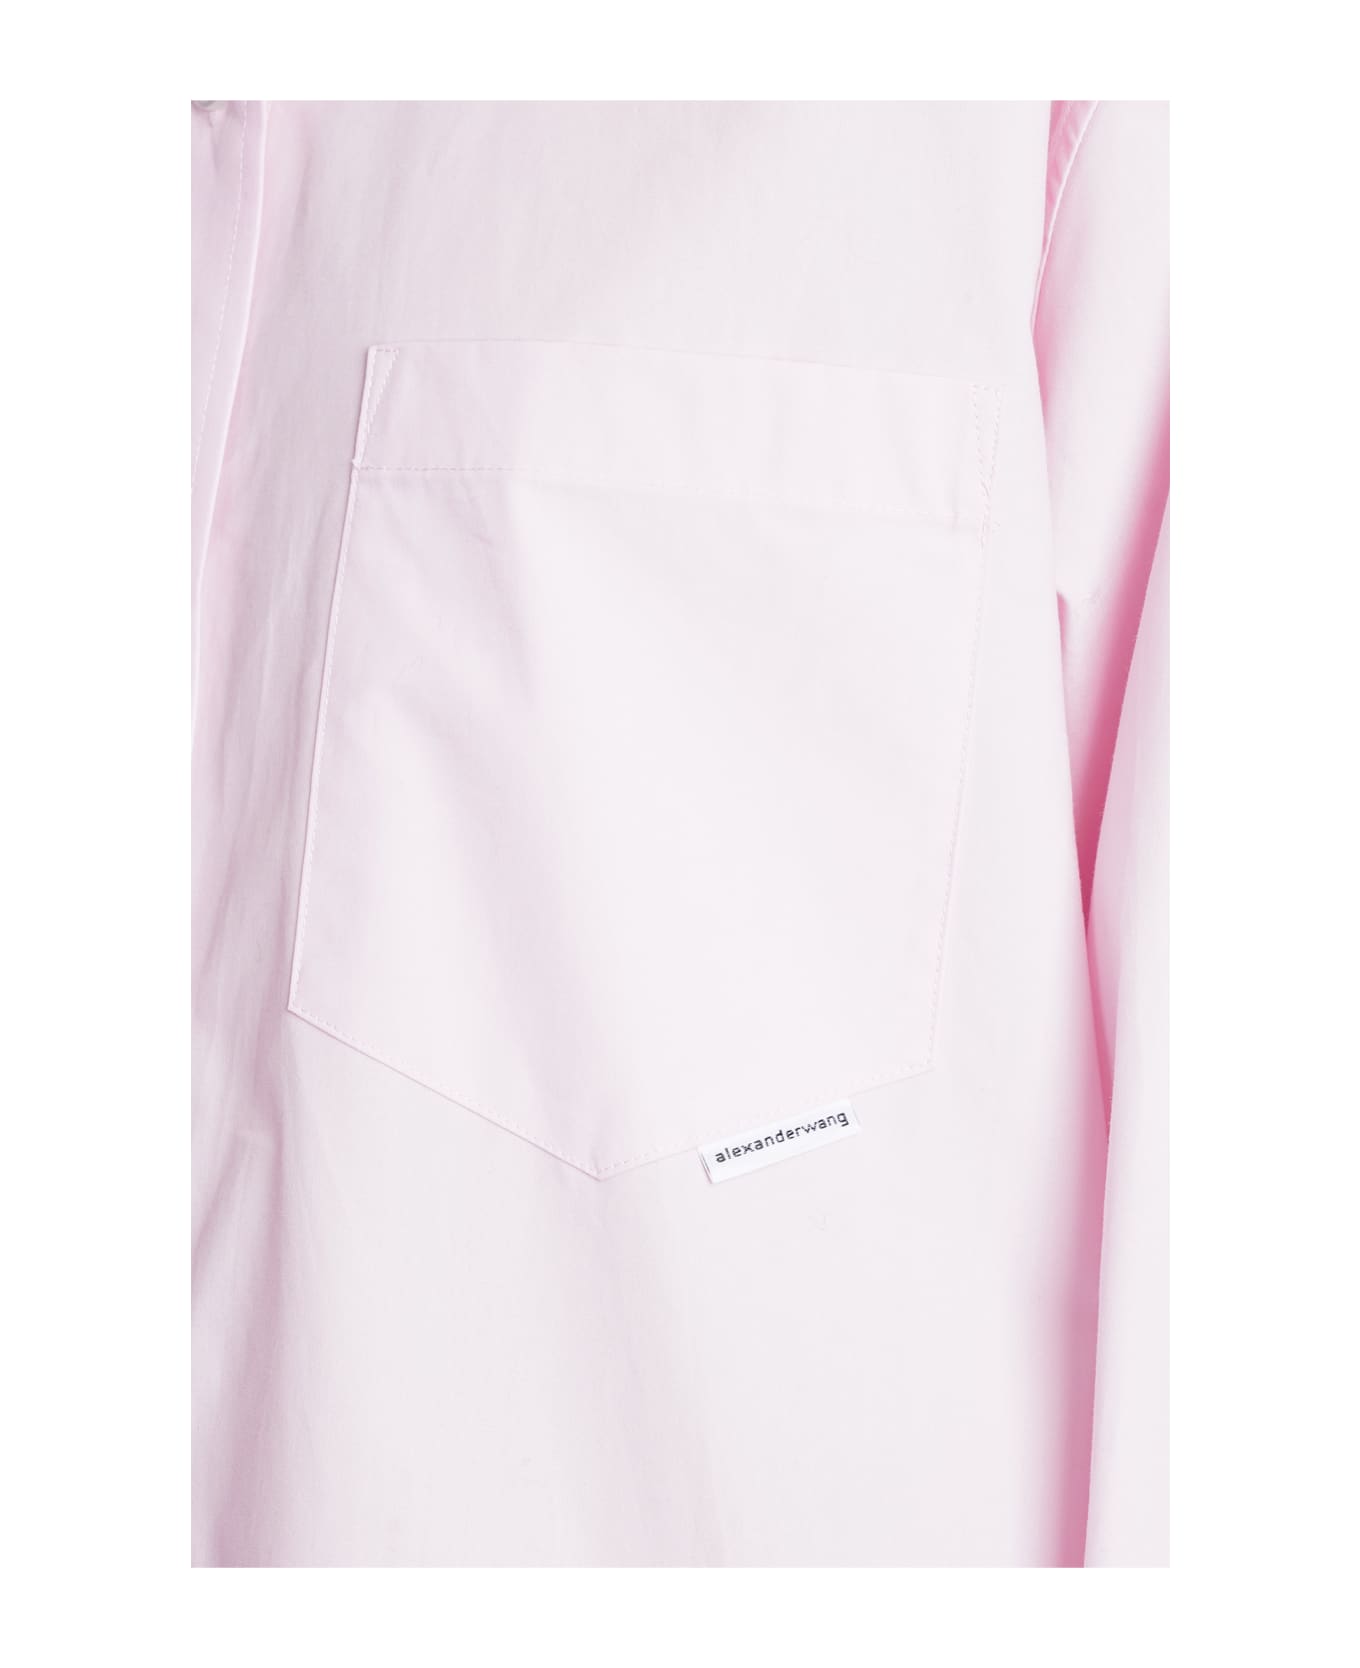 Alexander Wang Shirt In Rose-pink Cotton - rose-pink